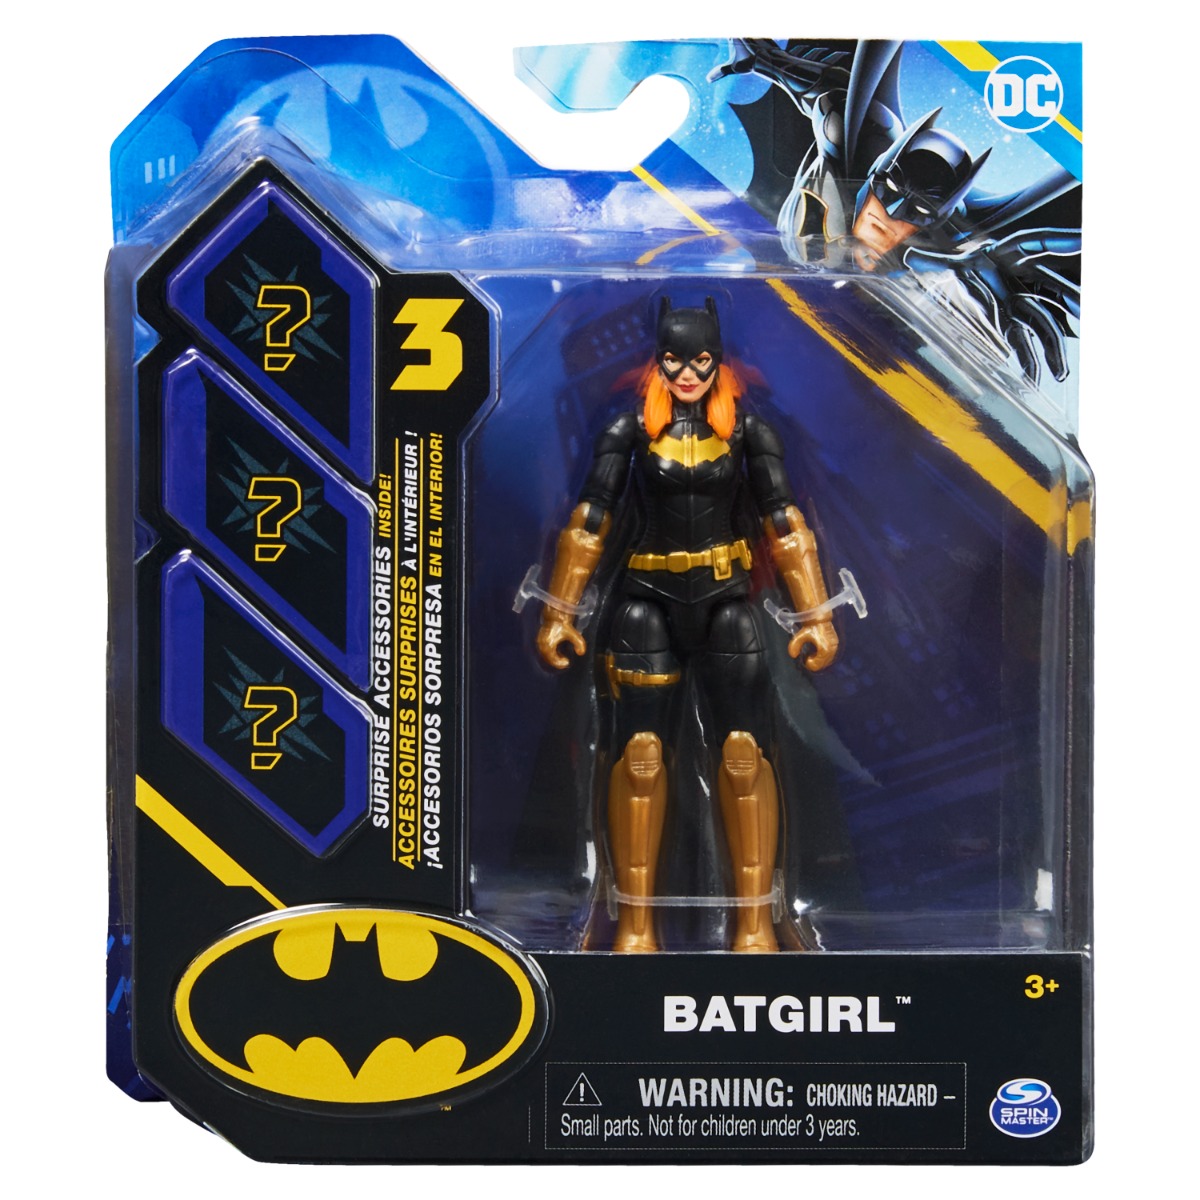 Set Figurina cu accesorii surpriza Batman, Batgirl 20138127